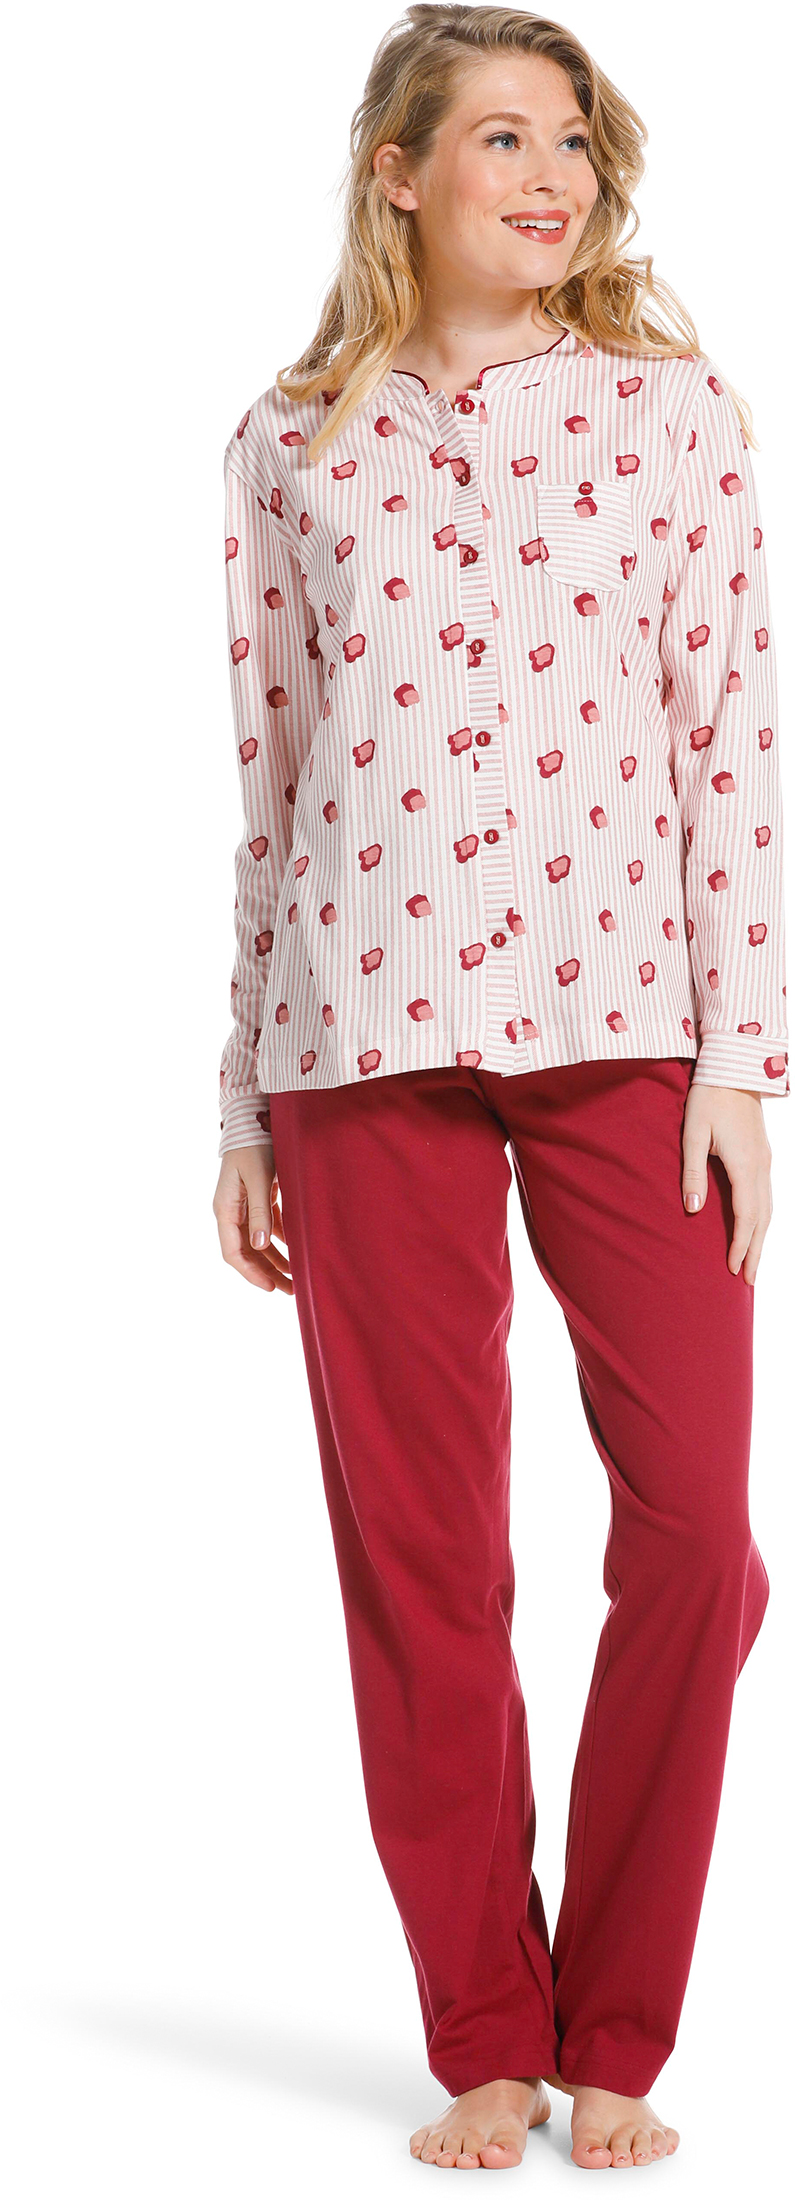 Pastunette doorknoop dames pyjama 20222-104-6 - Rose - 52